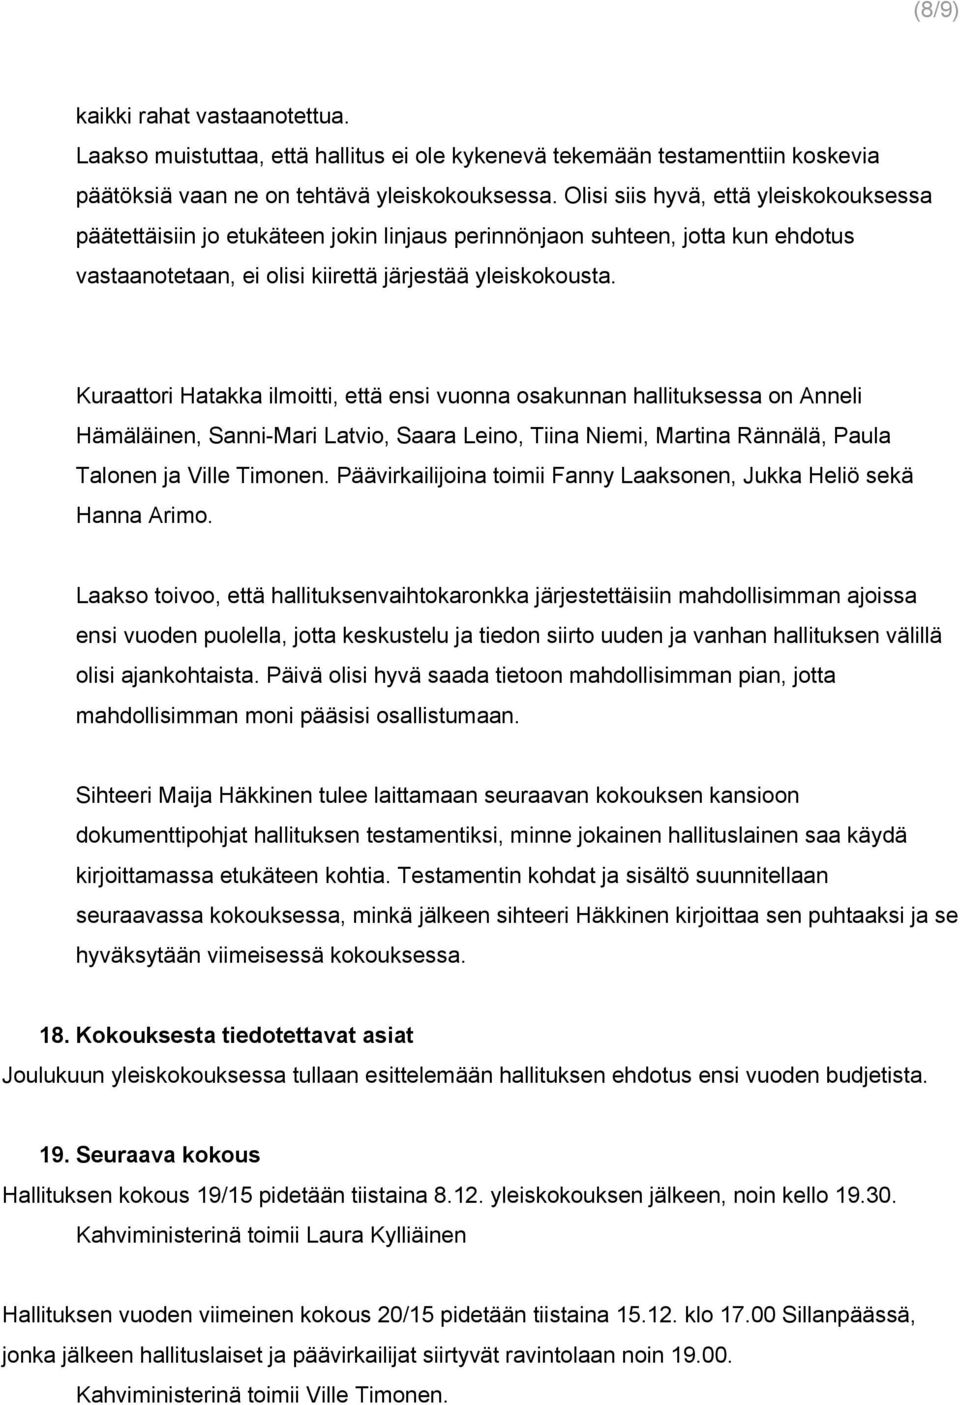 Kuraattori Hatakka ilmoitti, että ensi vuonna osakunnan hallituksessa on Anneli Hämäläinen, Sanni Mari Latvio, Saara Leino, Tiina Niemi, Martina Rännälä, Paula Talonen ja Ville Timonen.